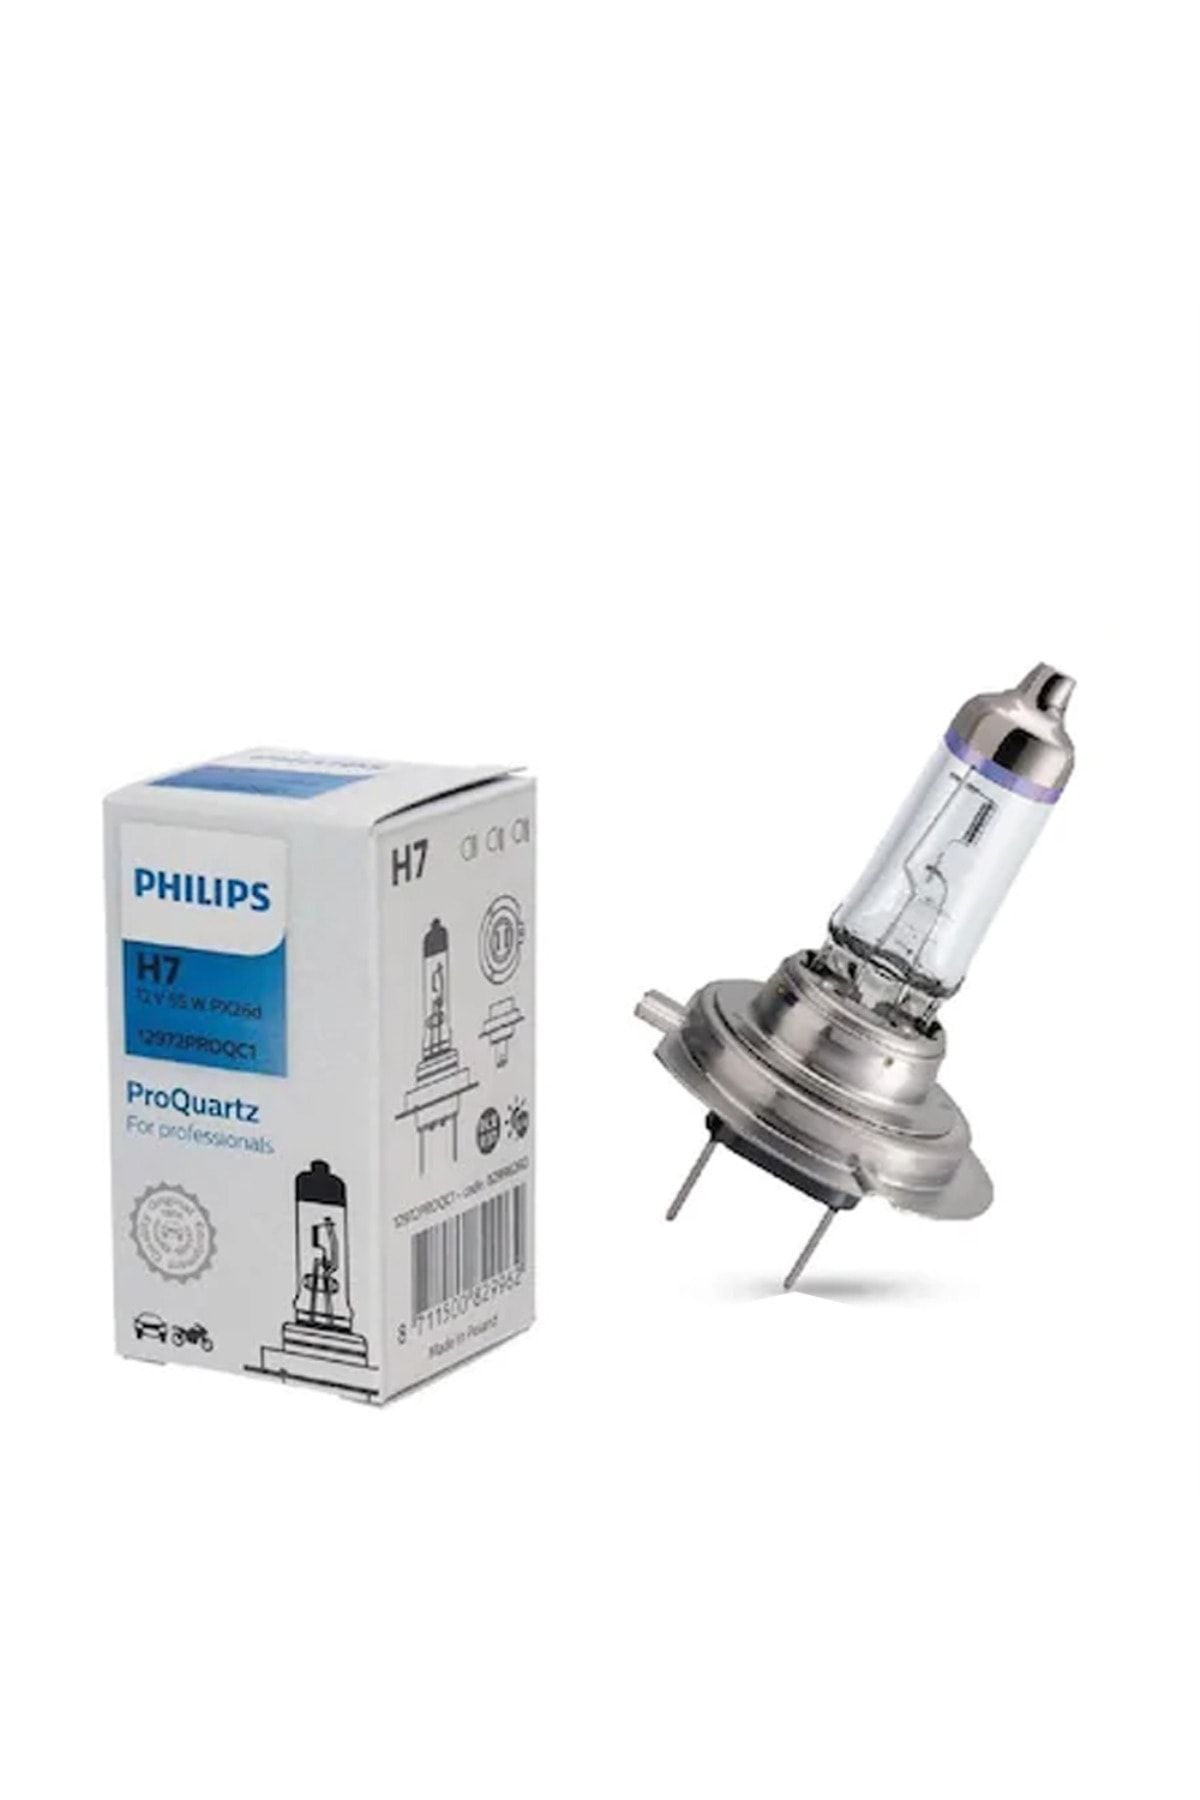 Philips H7 12v 55w Standart Ampül Fiyatı, Yorumları - Trendyol